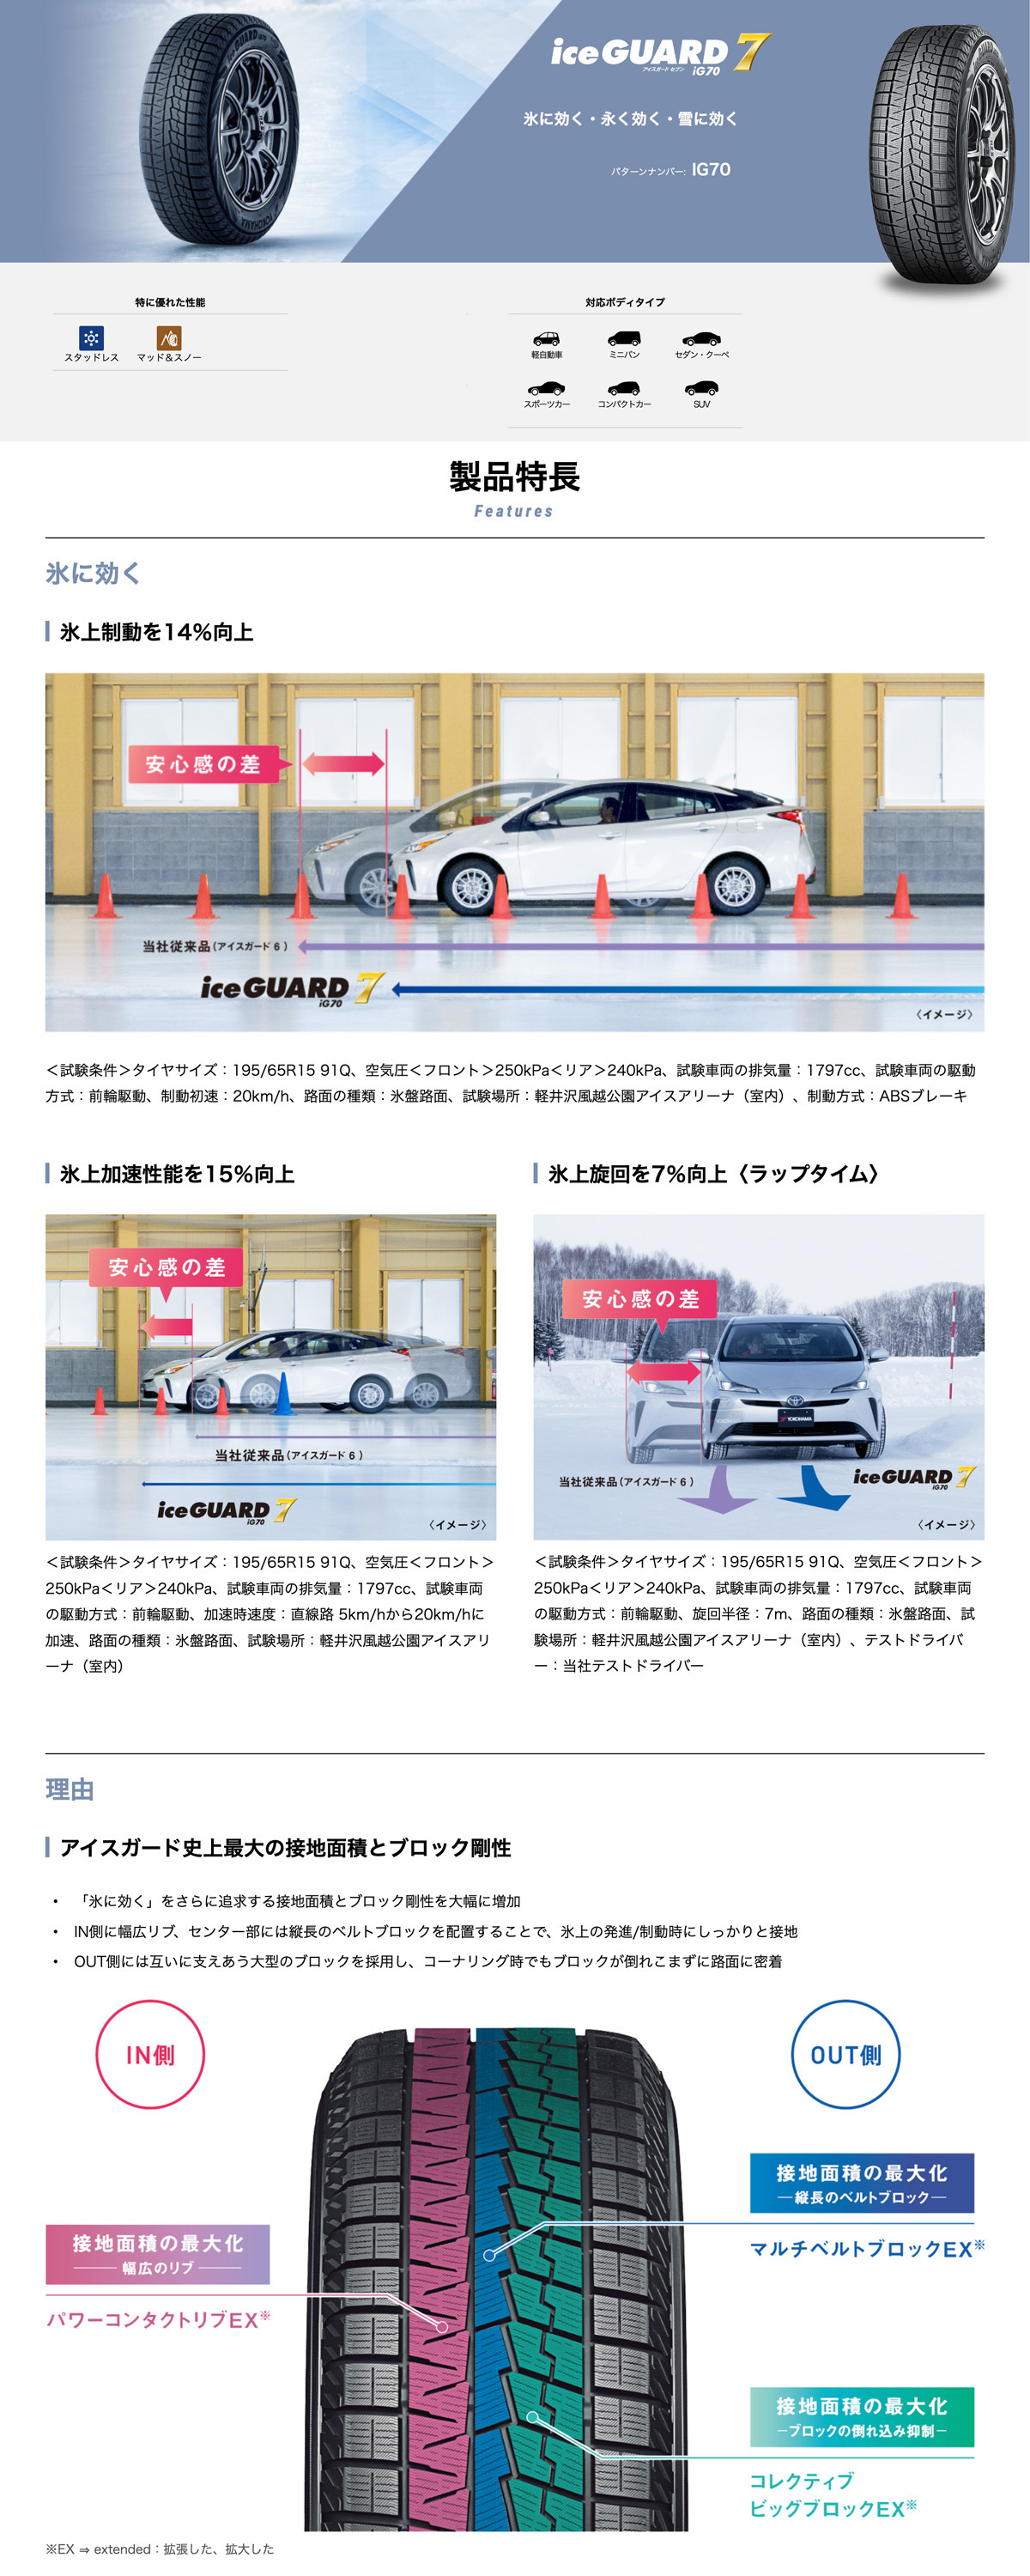 4本セット 新品 処分特価 スタッドレスタイヤ 165 60R15 77Q ヨコハマタイヤ YOKOHAMA iceGUARD iG70 アイスガード セブン 日本製 国産 冬 スノー 送料無料